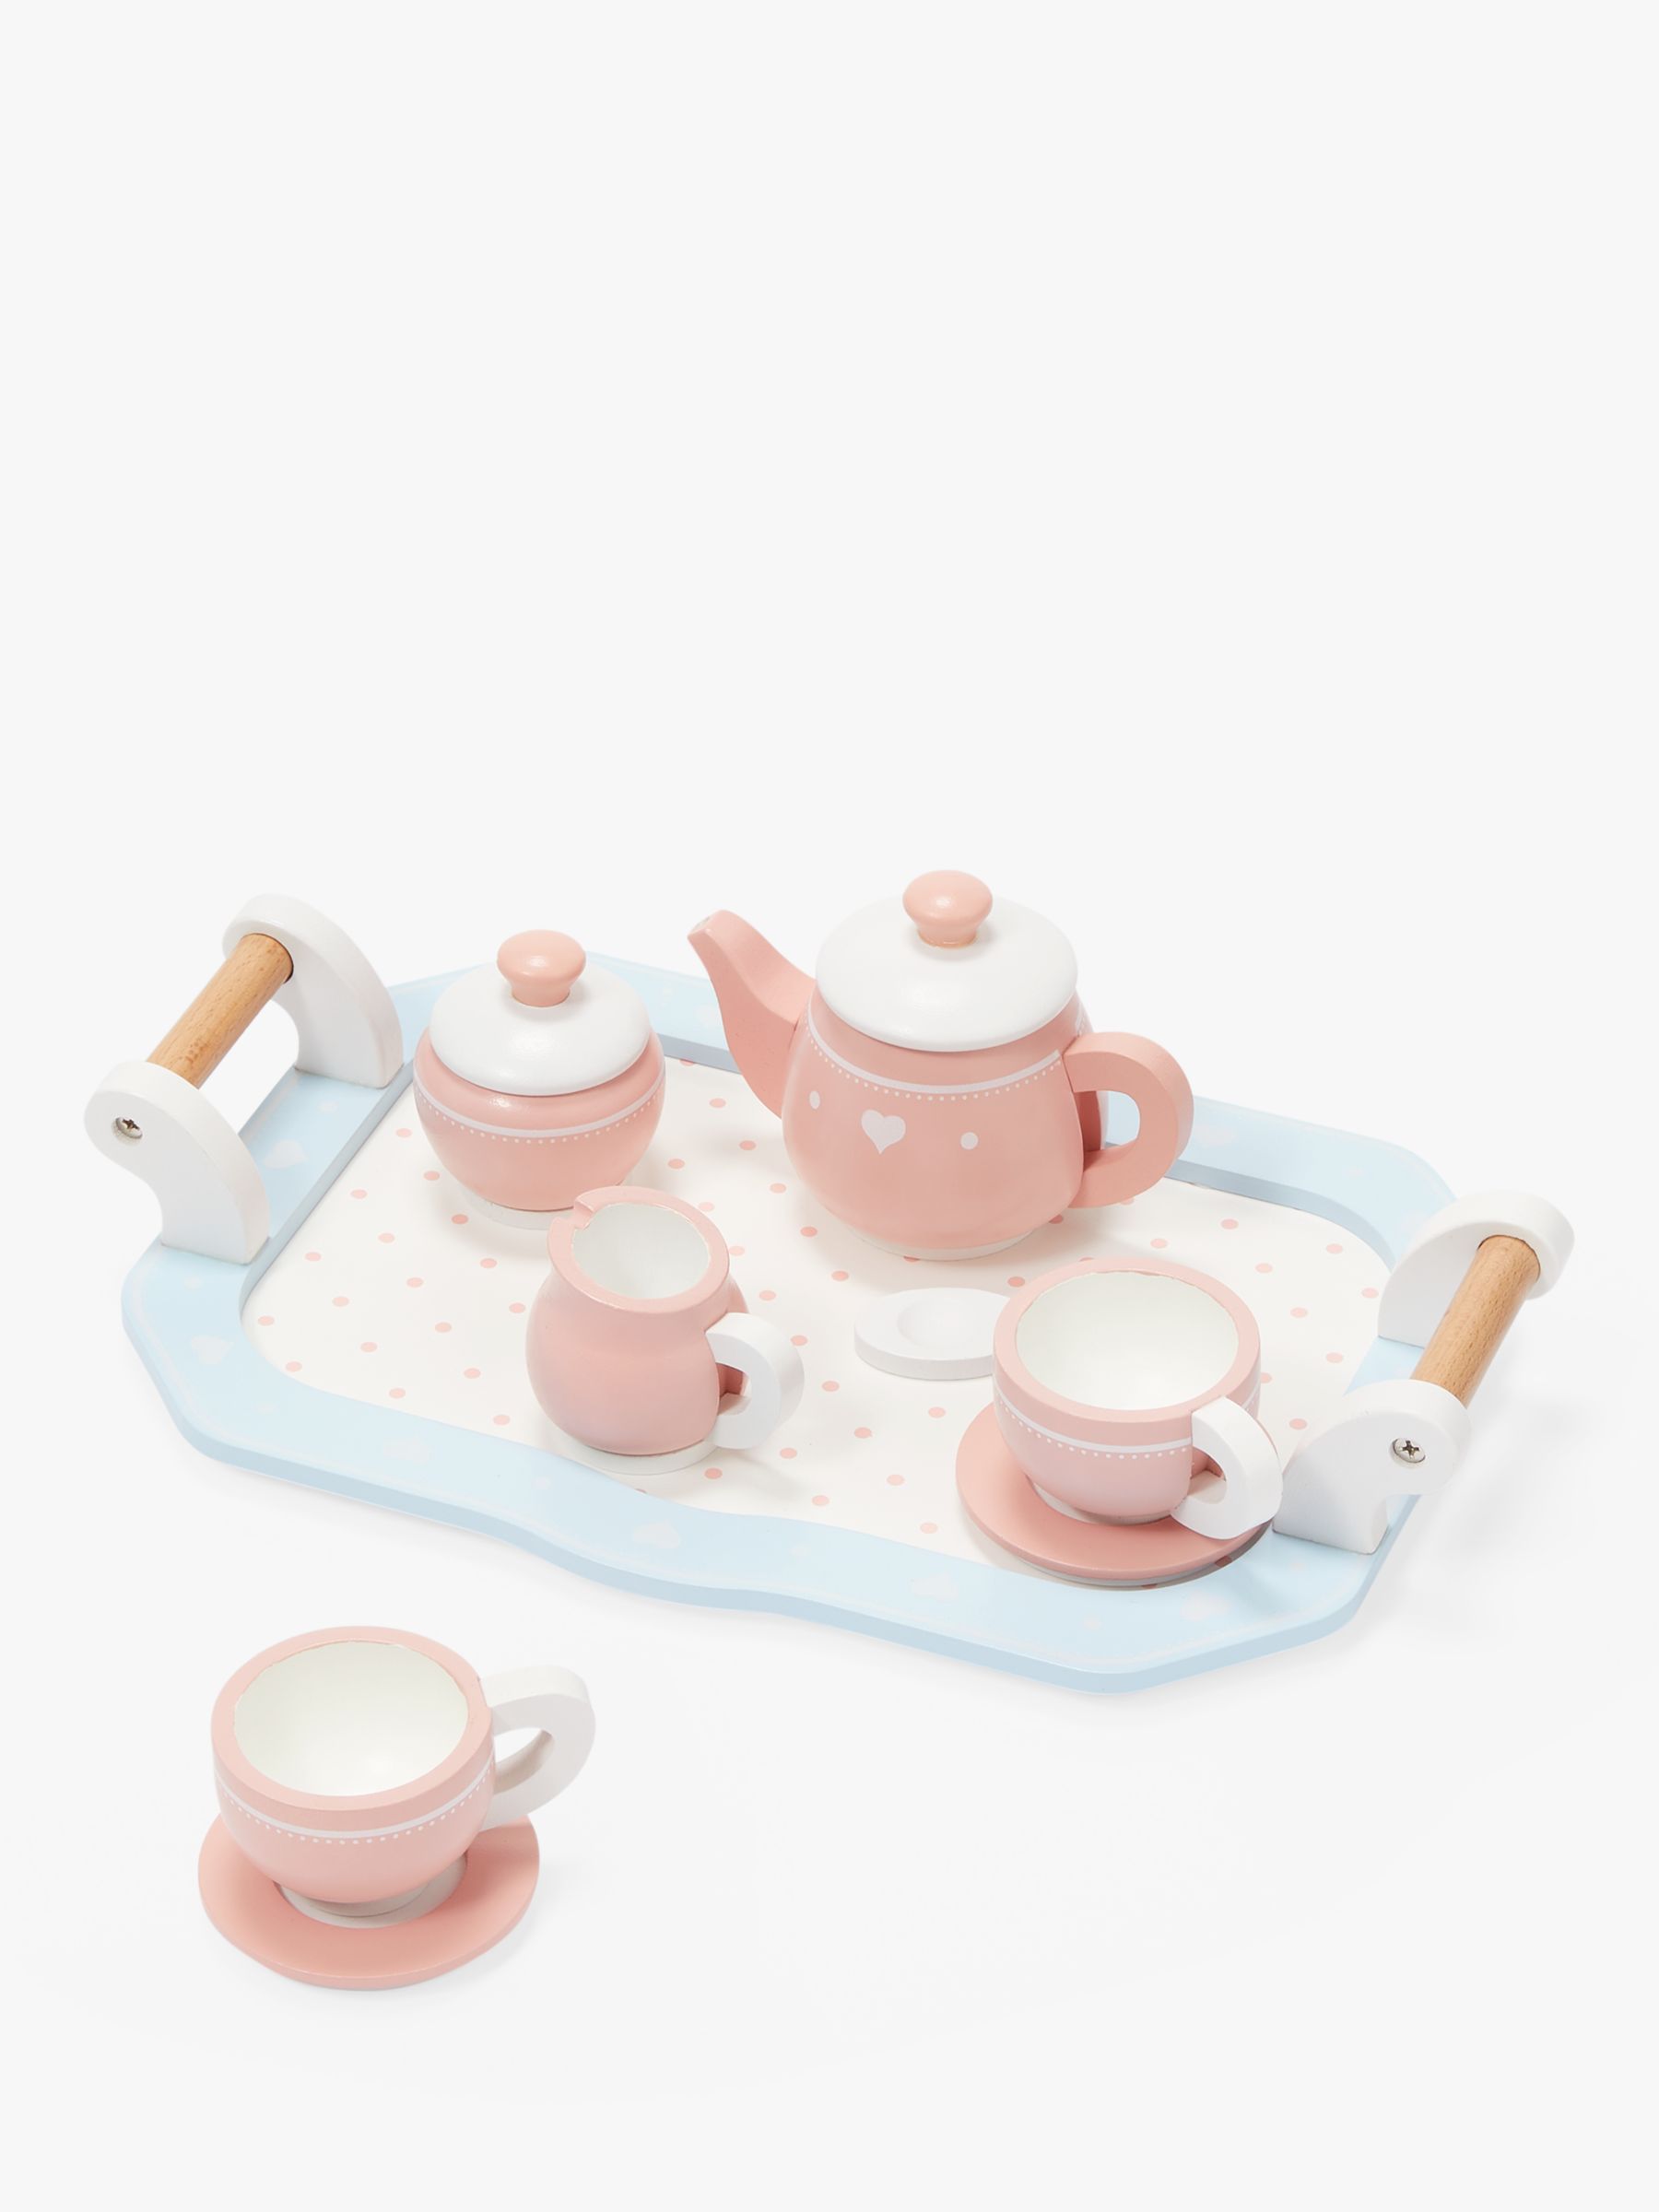 toy tea set